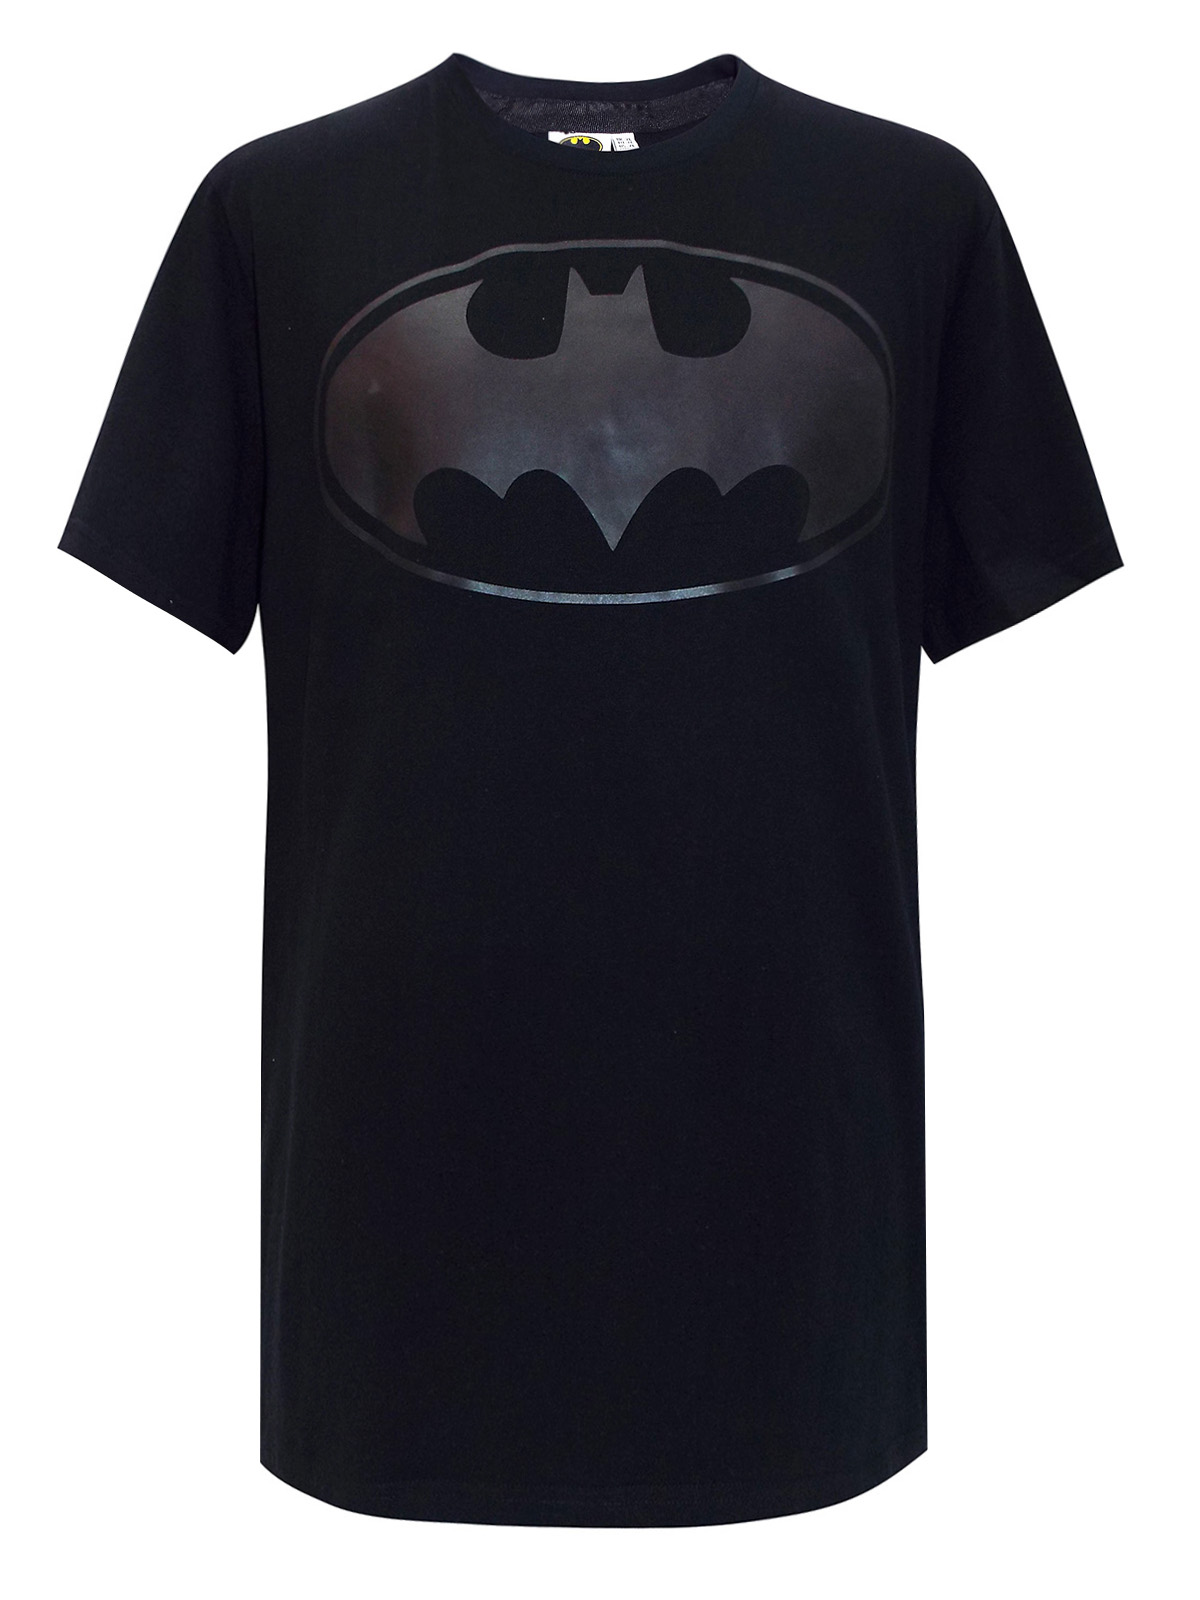 DC Comics - - BLACK Mens Pure Cotton Batman T-Shirt - Plus Size XLarge